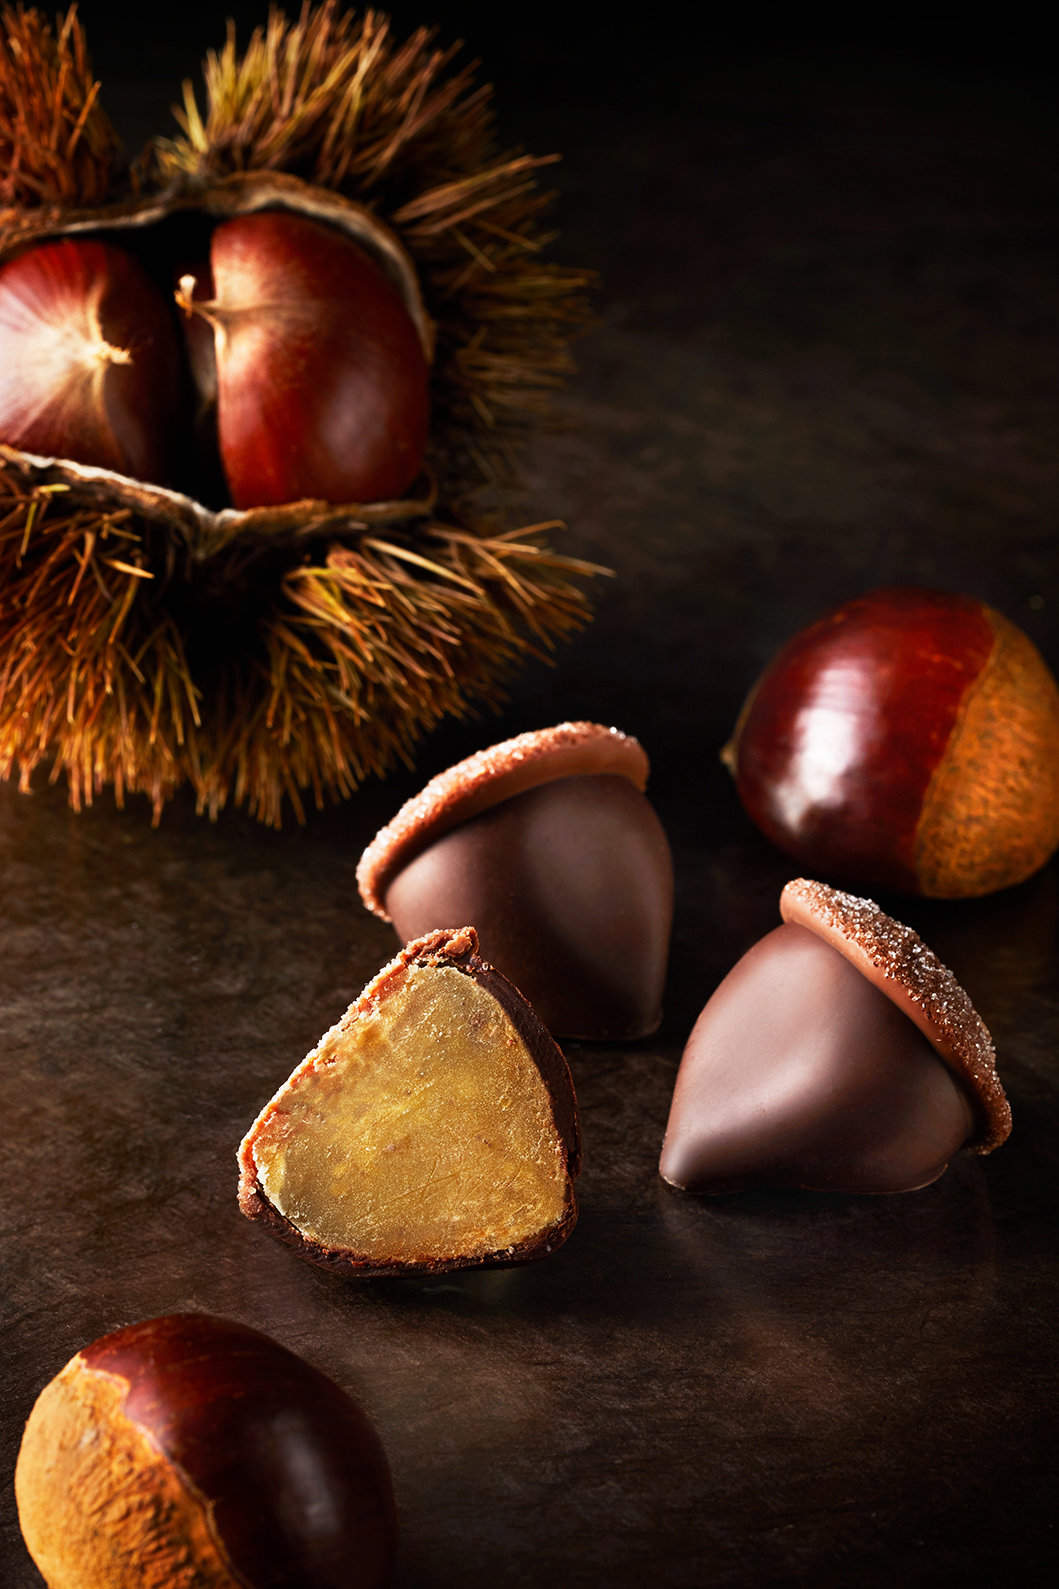 chestnut choco